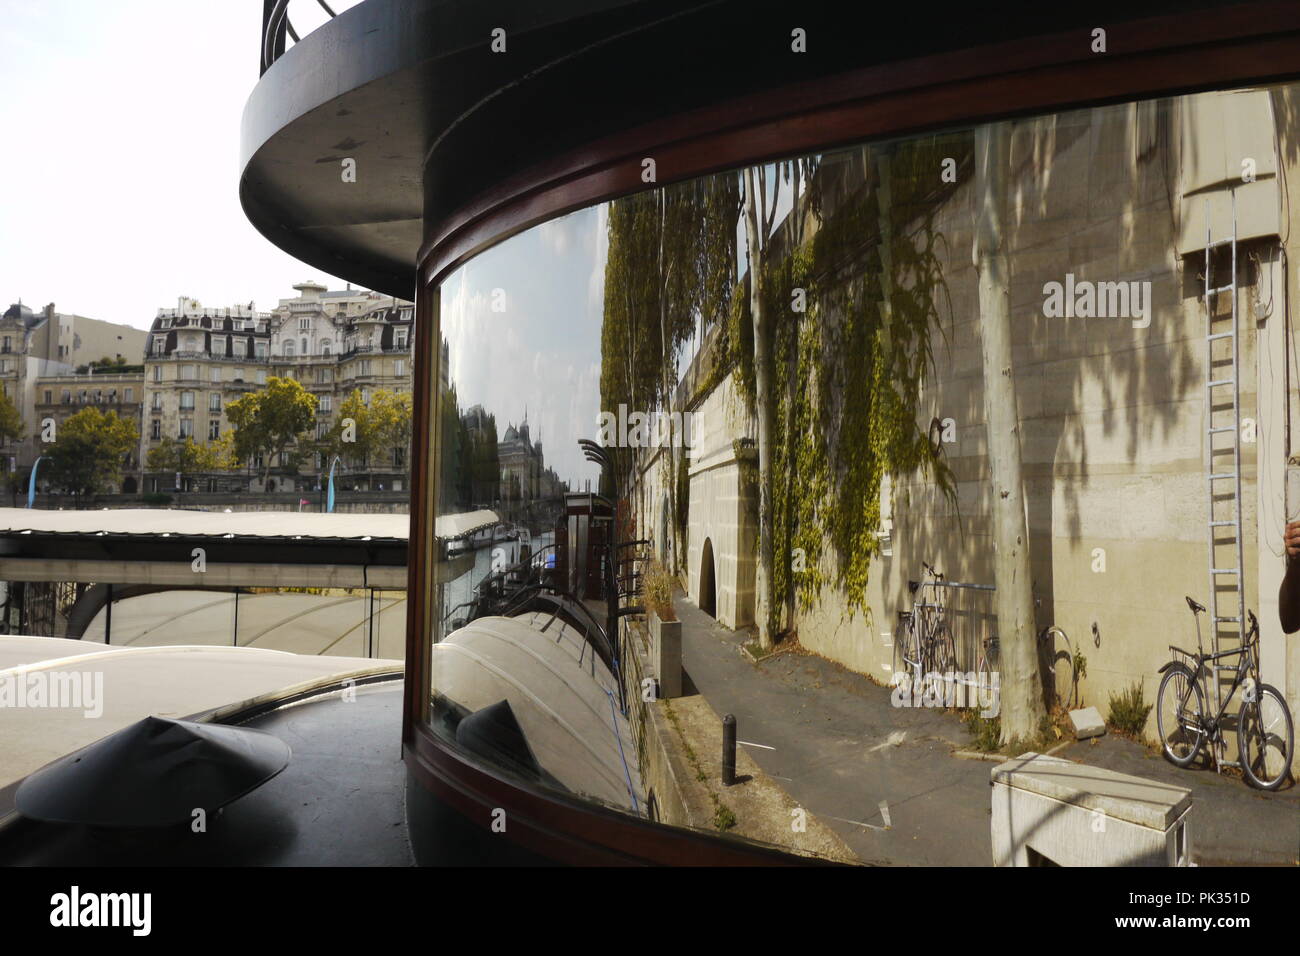 Camminando lungo la riva del fiume Senna a Parigi e ho visto un bel riflesso nella finestra di una casa galleggiante. Foto Stock